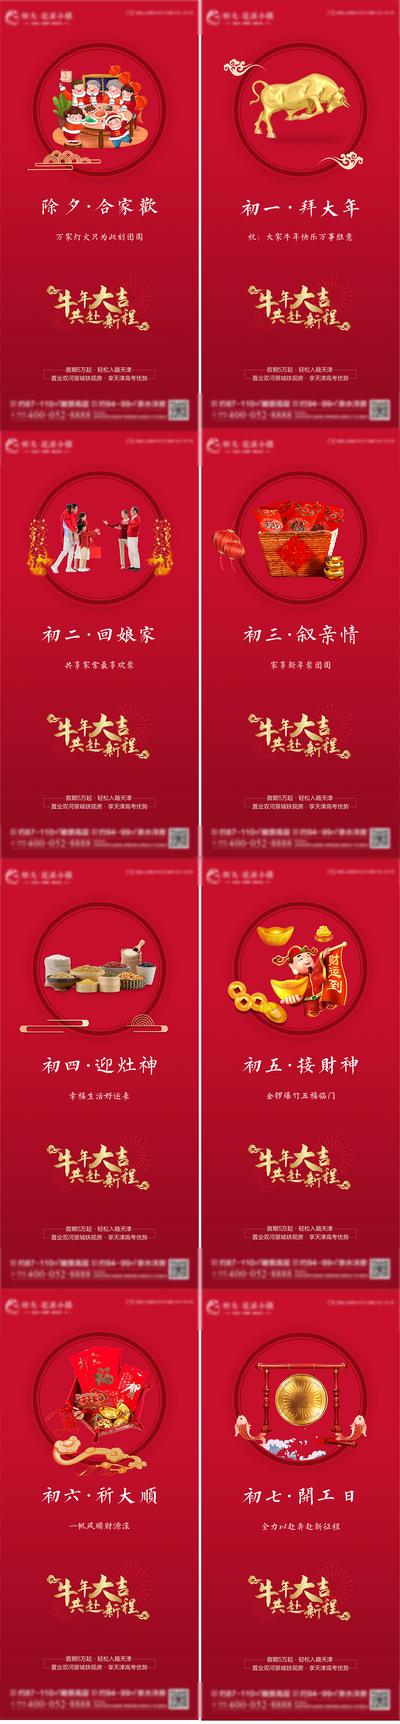 南门网 海报 房地产 中国传统节日 新年 除夕 春节 拜年 年俗  初一 初七  开工 系列 红色 